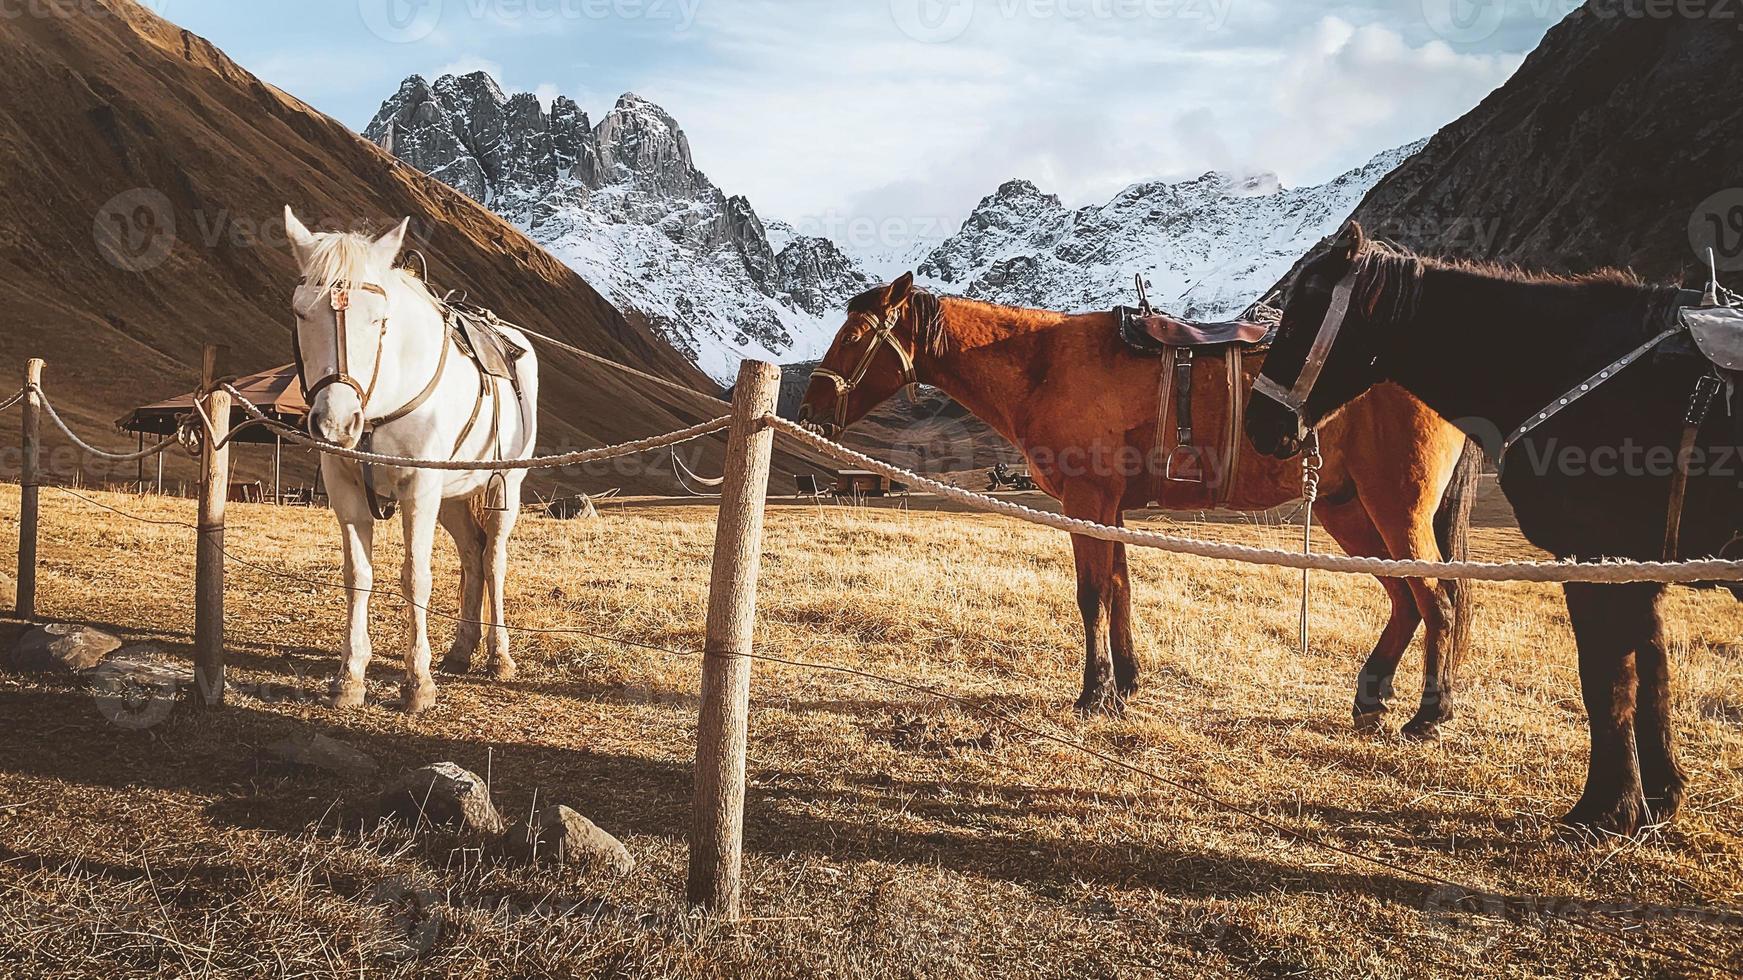 schöne drei pferde weiß braun schwarz stehen im wiesenfeld im juta-tal im kazbegi-nationalpark mit dramatischem berggipfelhintergrund. Wanderung Juta-Tal-Panorama foto